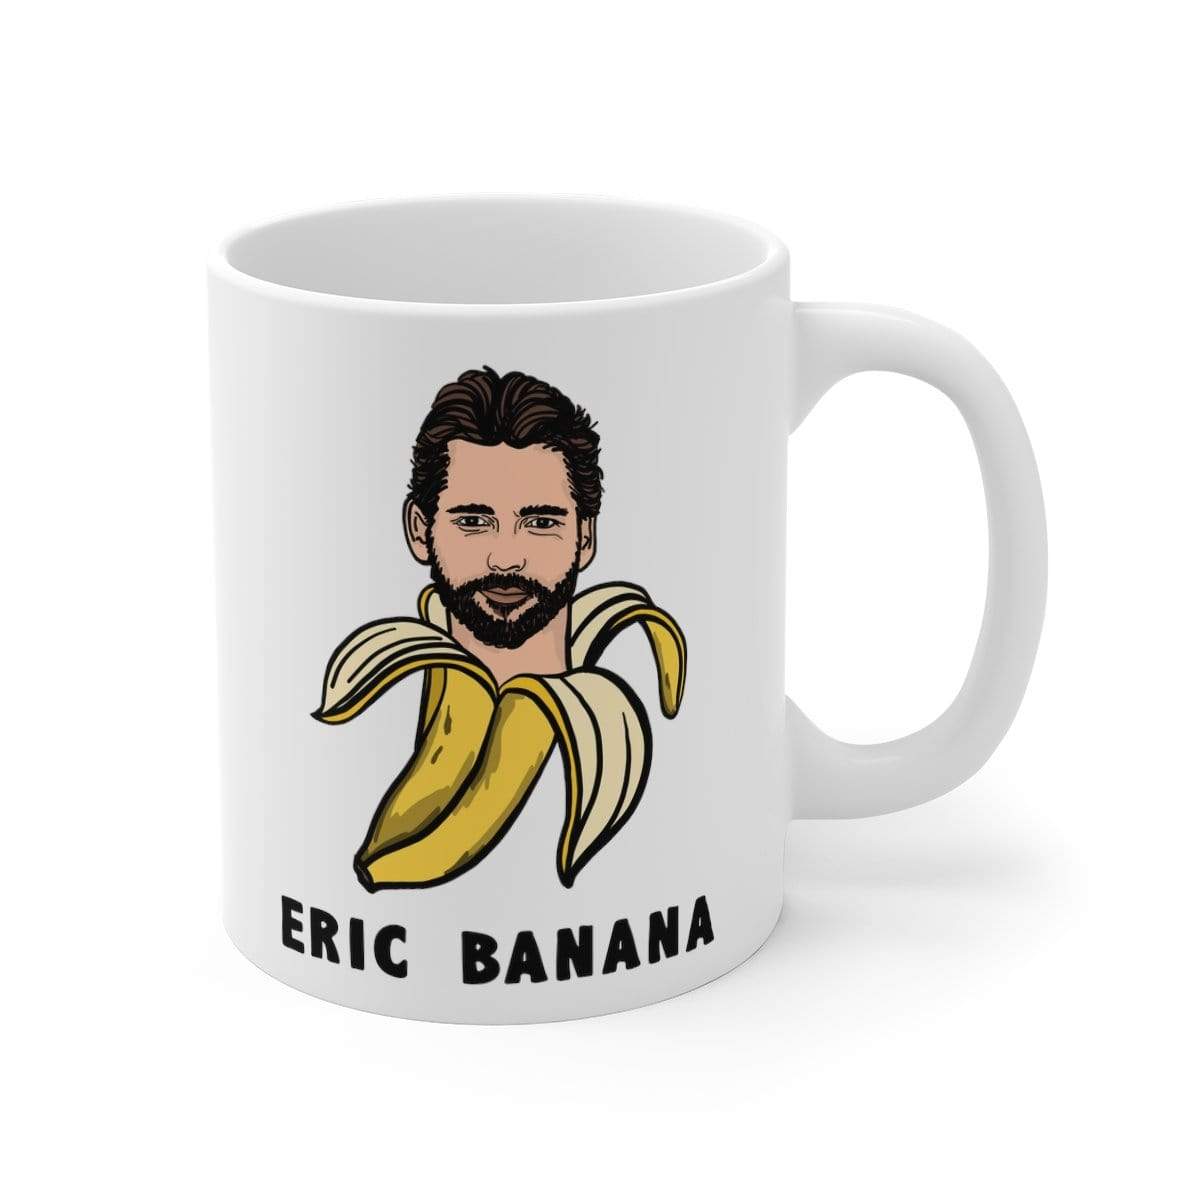 Eric Banana 🍌 - Coffee Mug